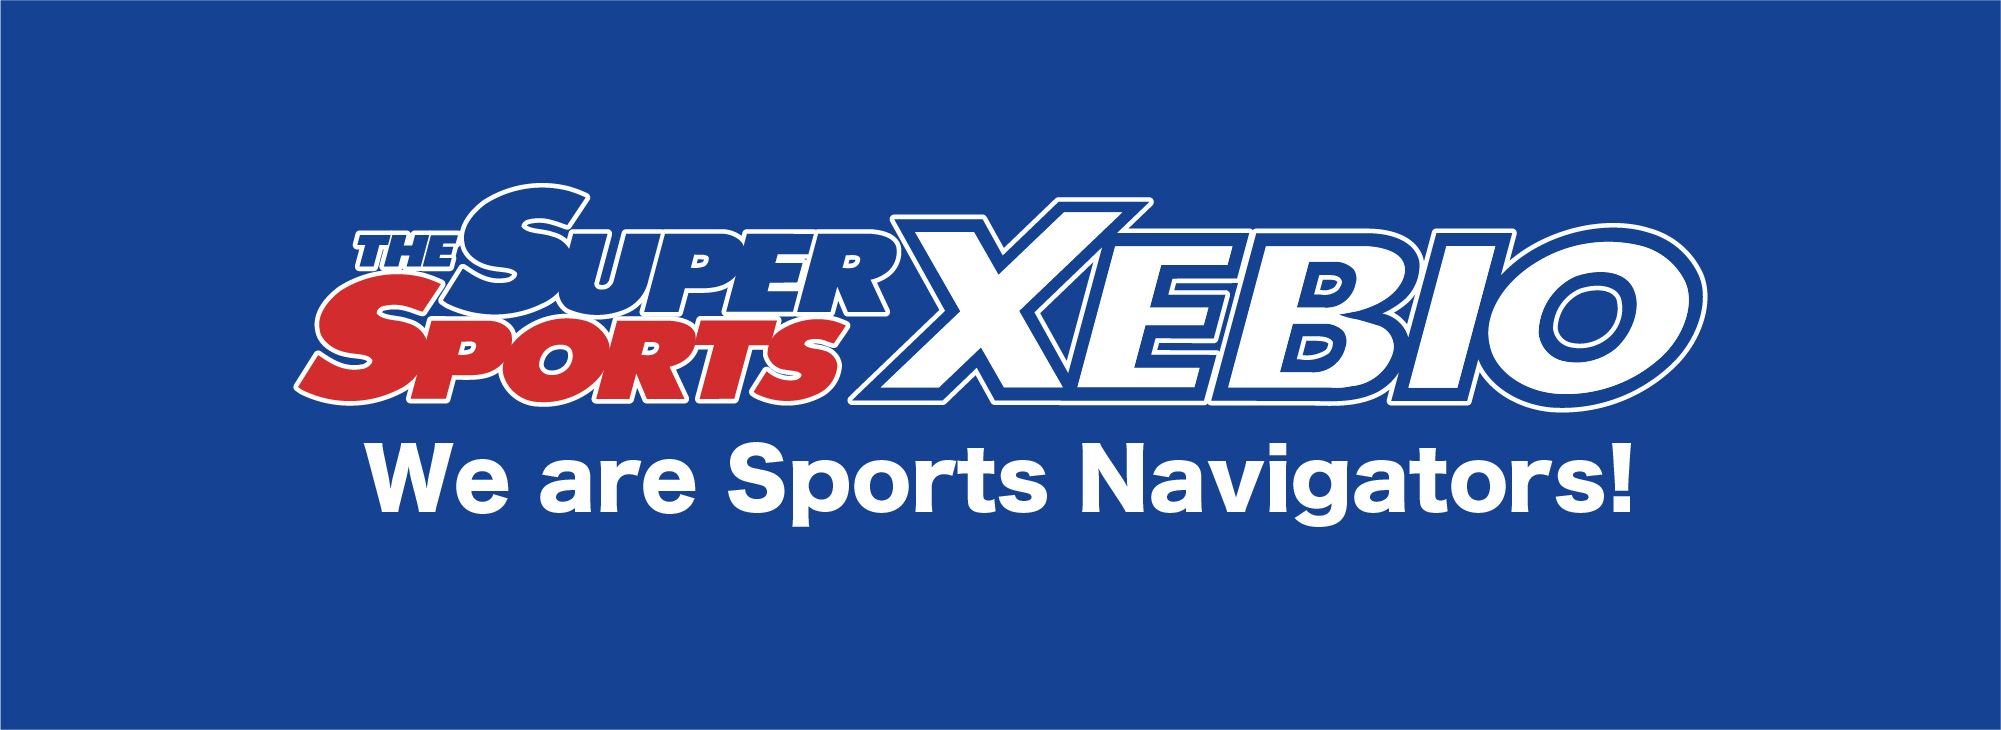 THE SUPER SPORTS XEBIO We are Sports Navigators!